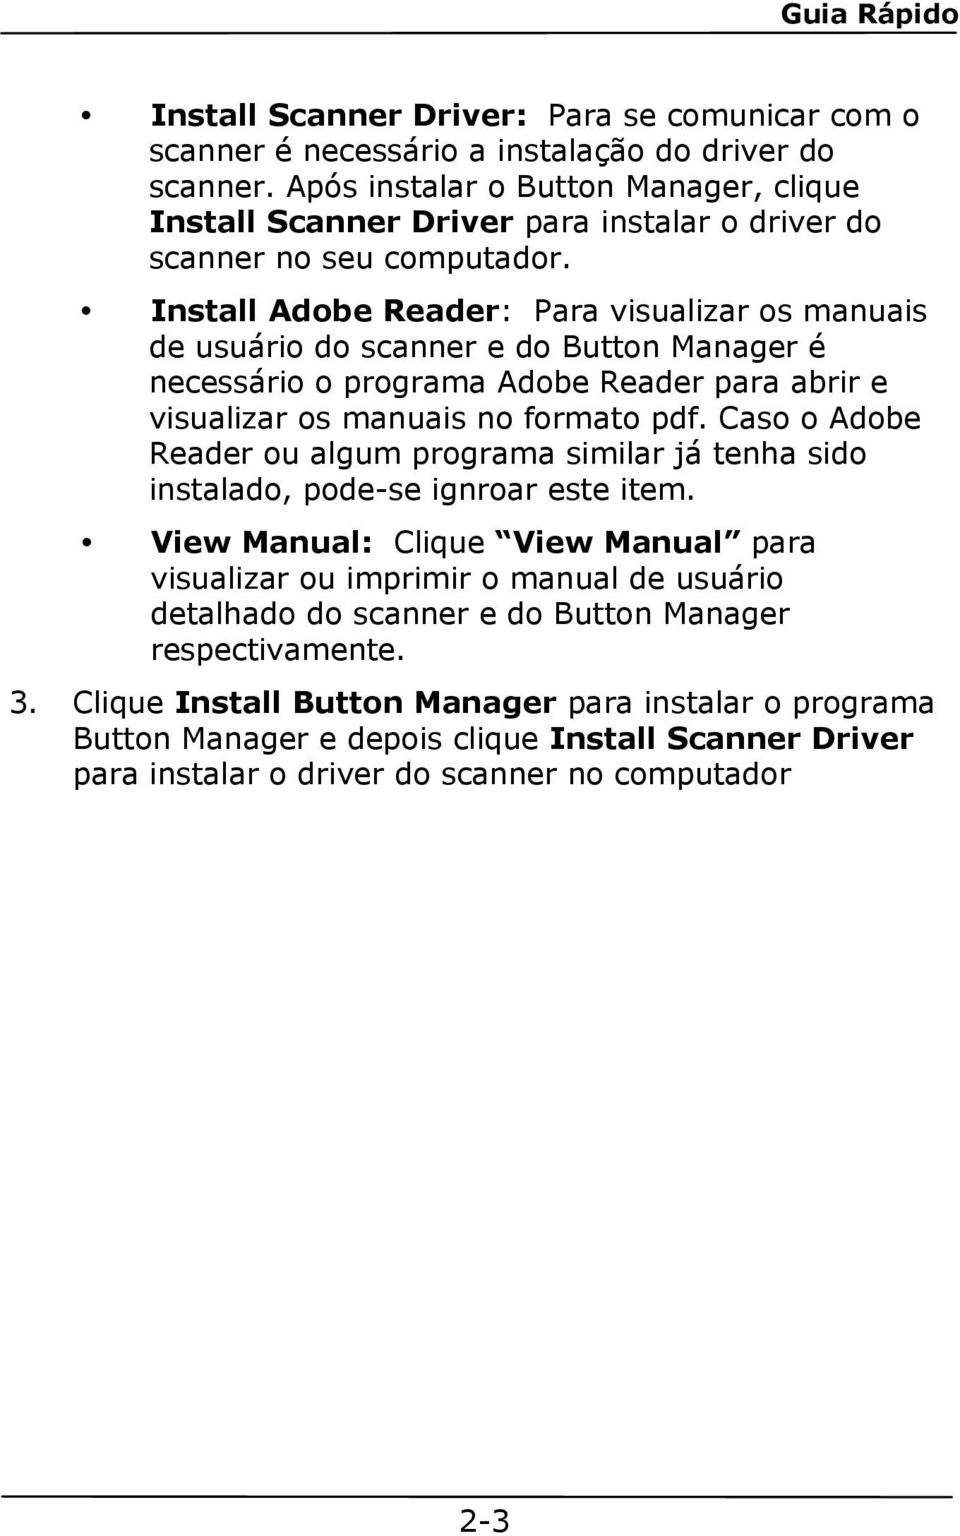 Install Adobe Reader: Para visualizar os manuais de usuário do scanner e do Button Manager é necessário o programa Adobe Reader para abrir e visualizar os manuais no formato pdf.